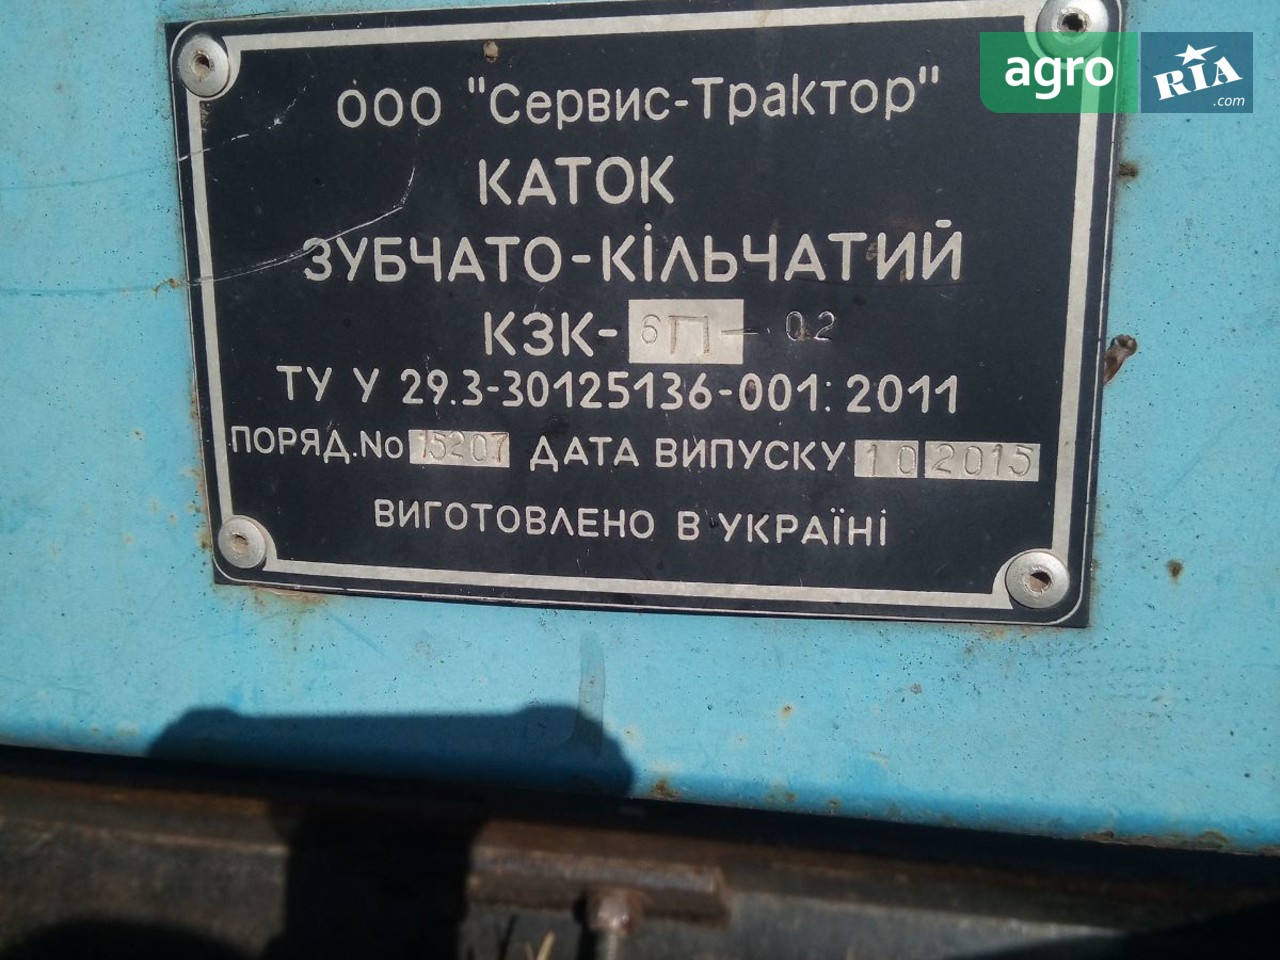 Каток полевой Литейный завод КЗК 6П-02 2015 - фото 1